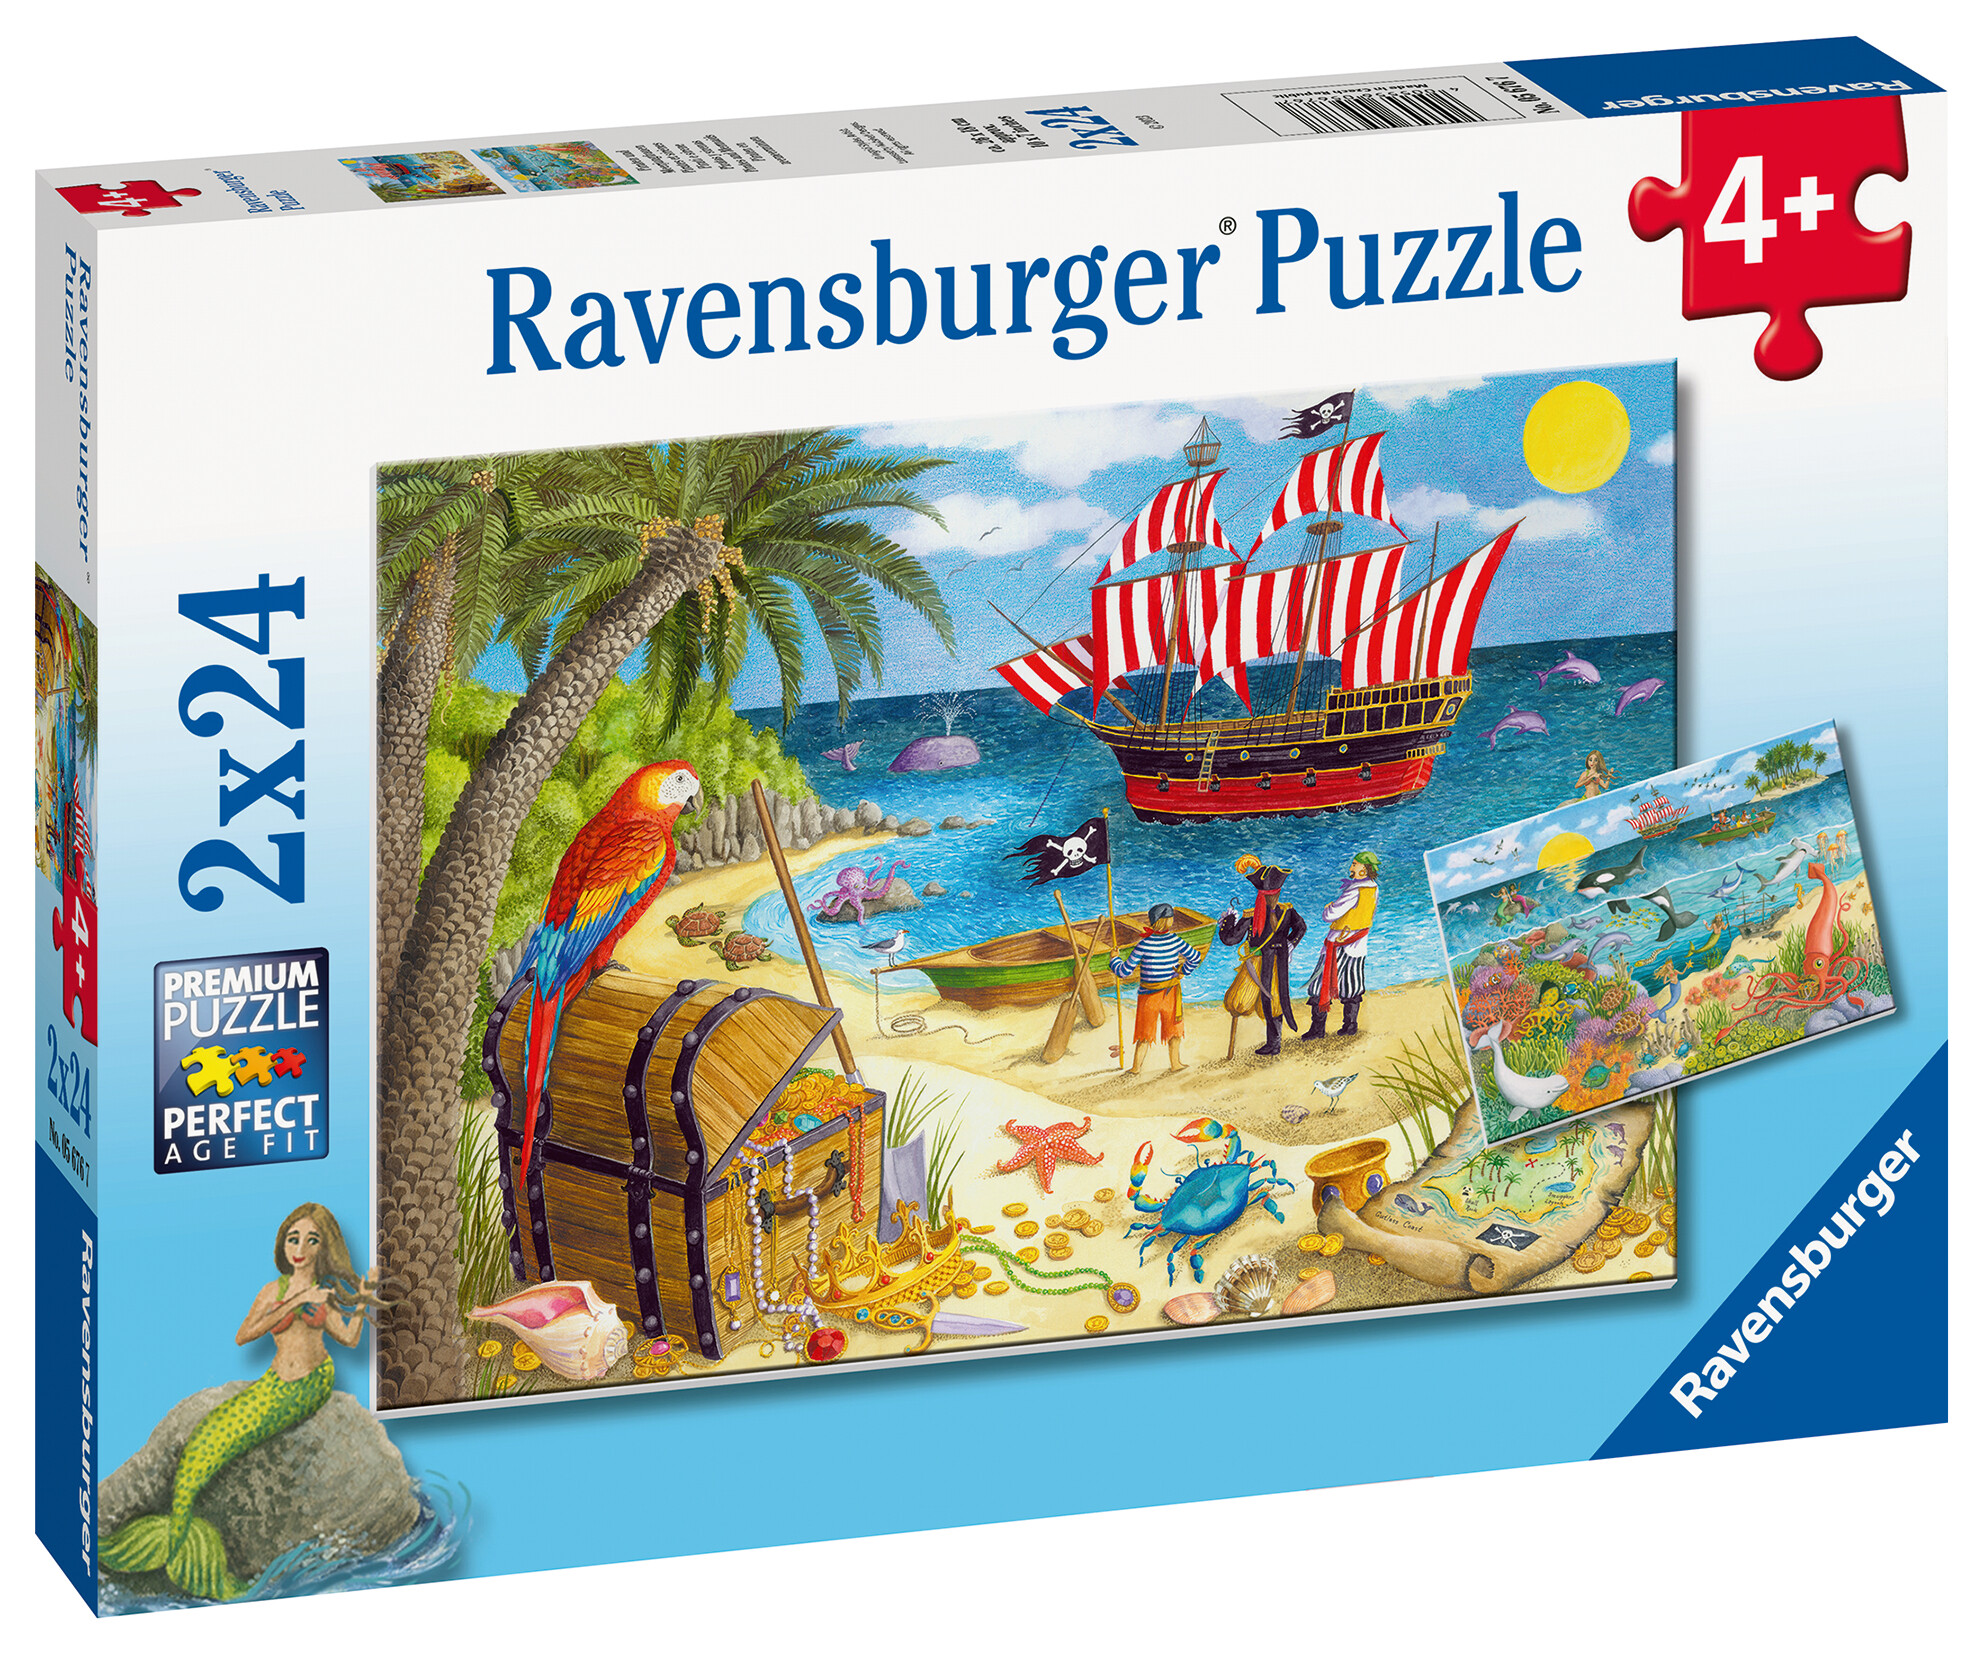 Ravensburger - puzzle pirati e sirene, collezione 2x24, 2 puzzle da 24 pezzi, età raccomandata 4+ anni - RAVENSBURGER